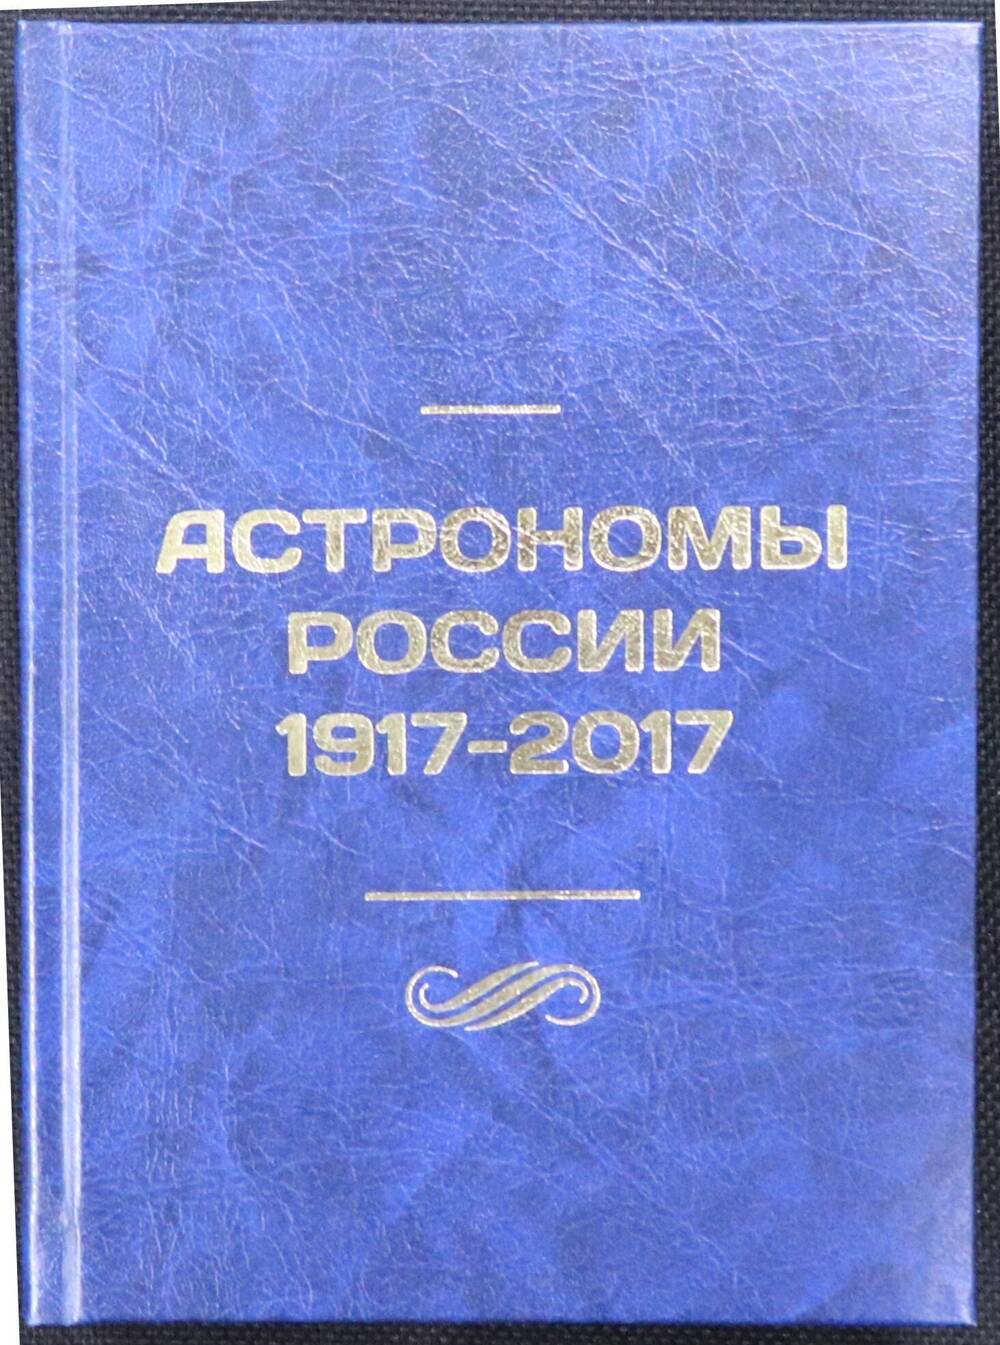 Книга. Астрономы России 1917-2017